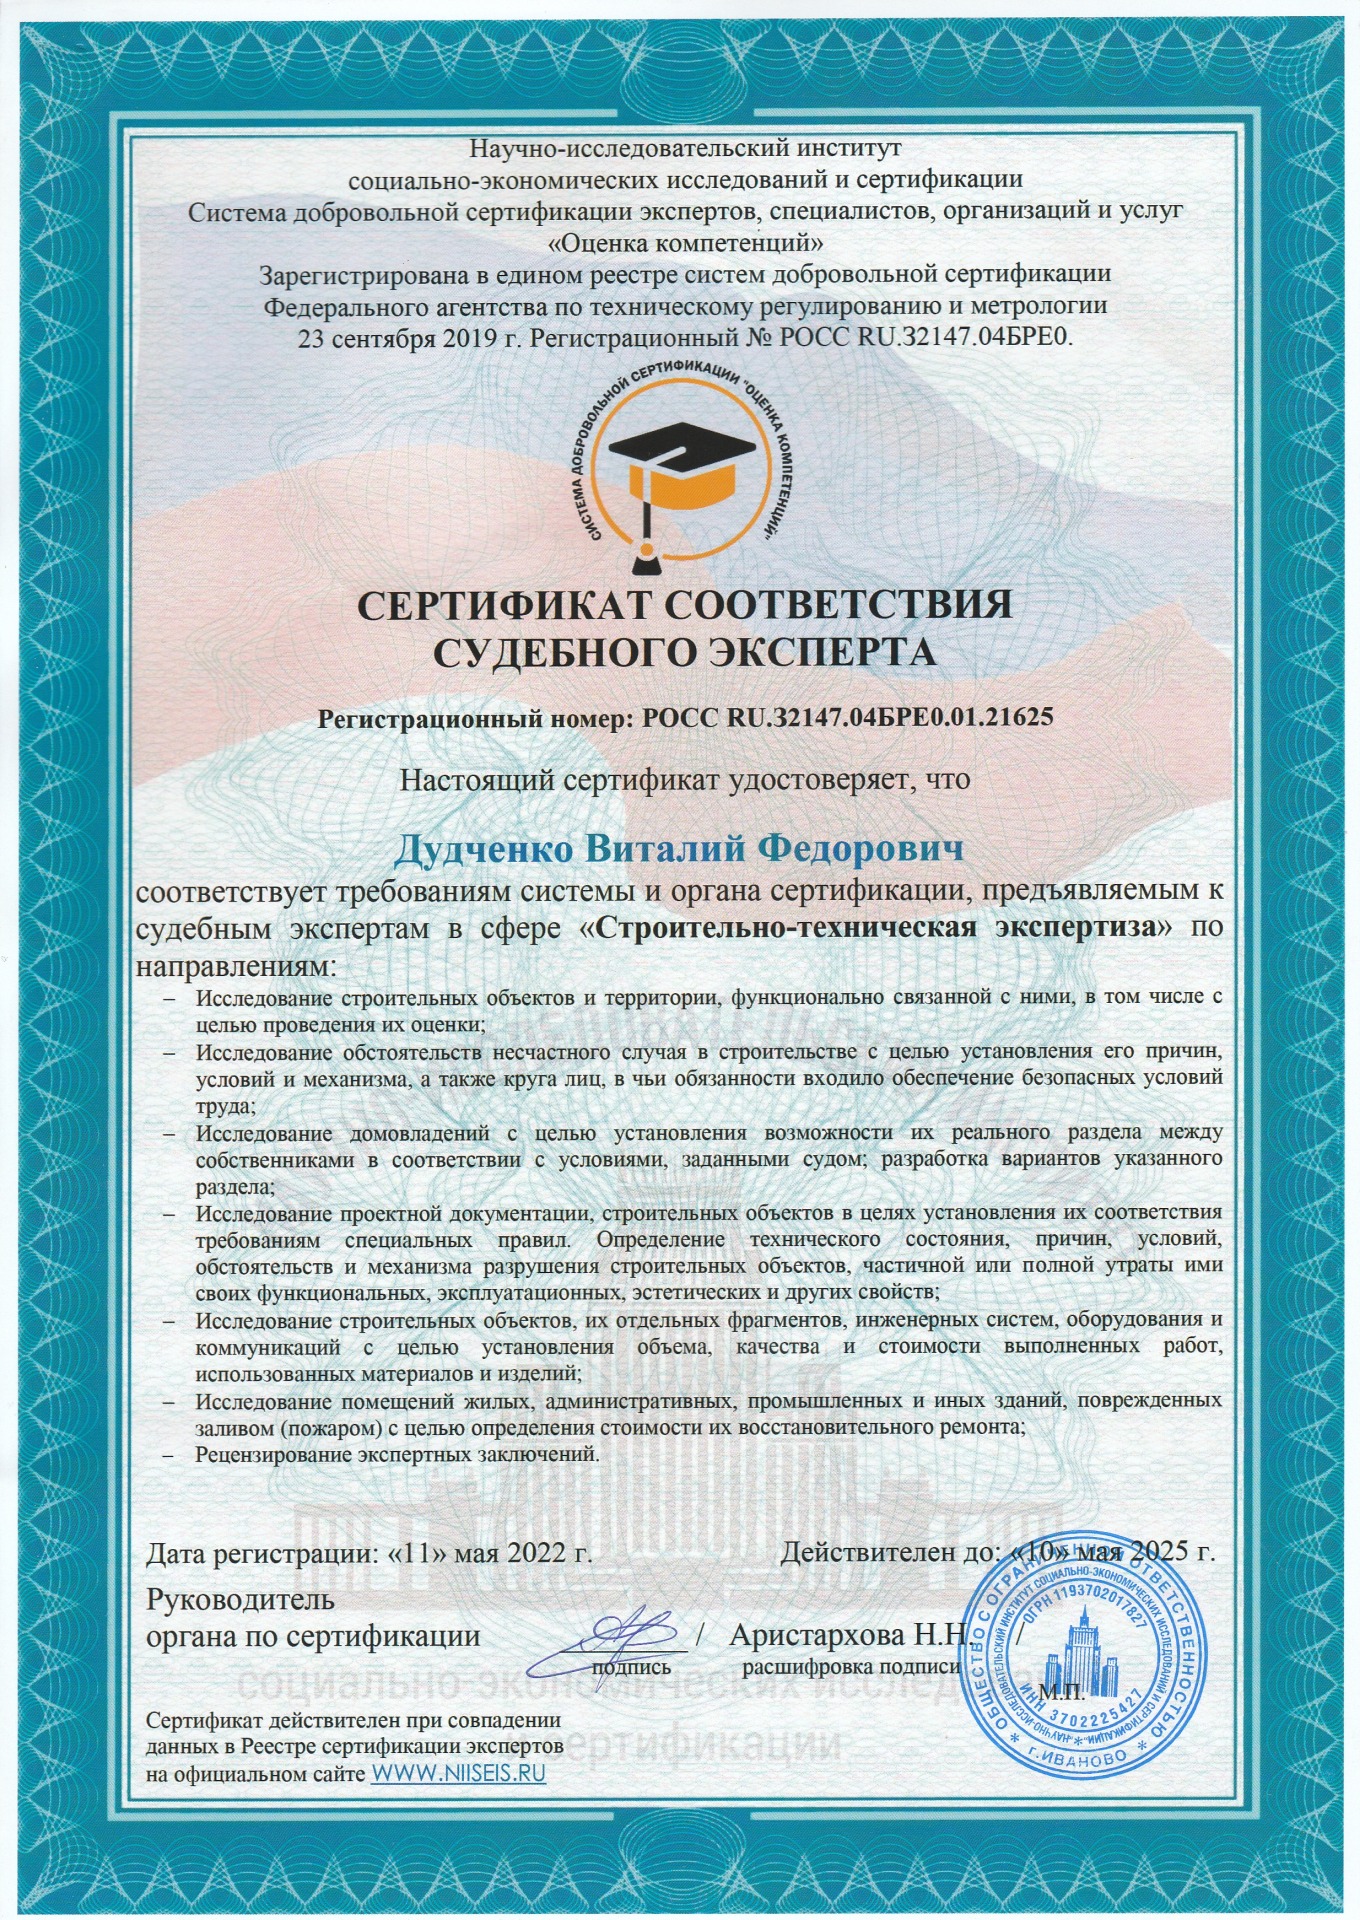 сертифицированный эксперт по строительно- технической экспертизе в Мурманске 